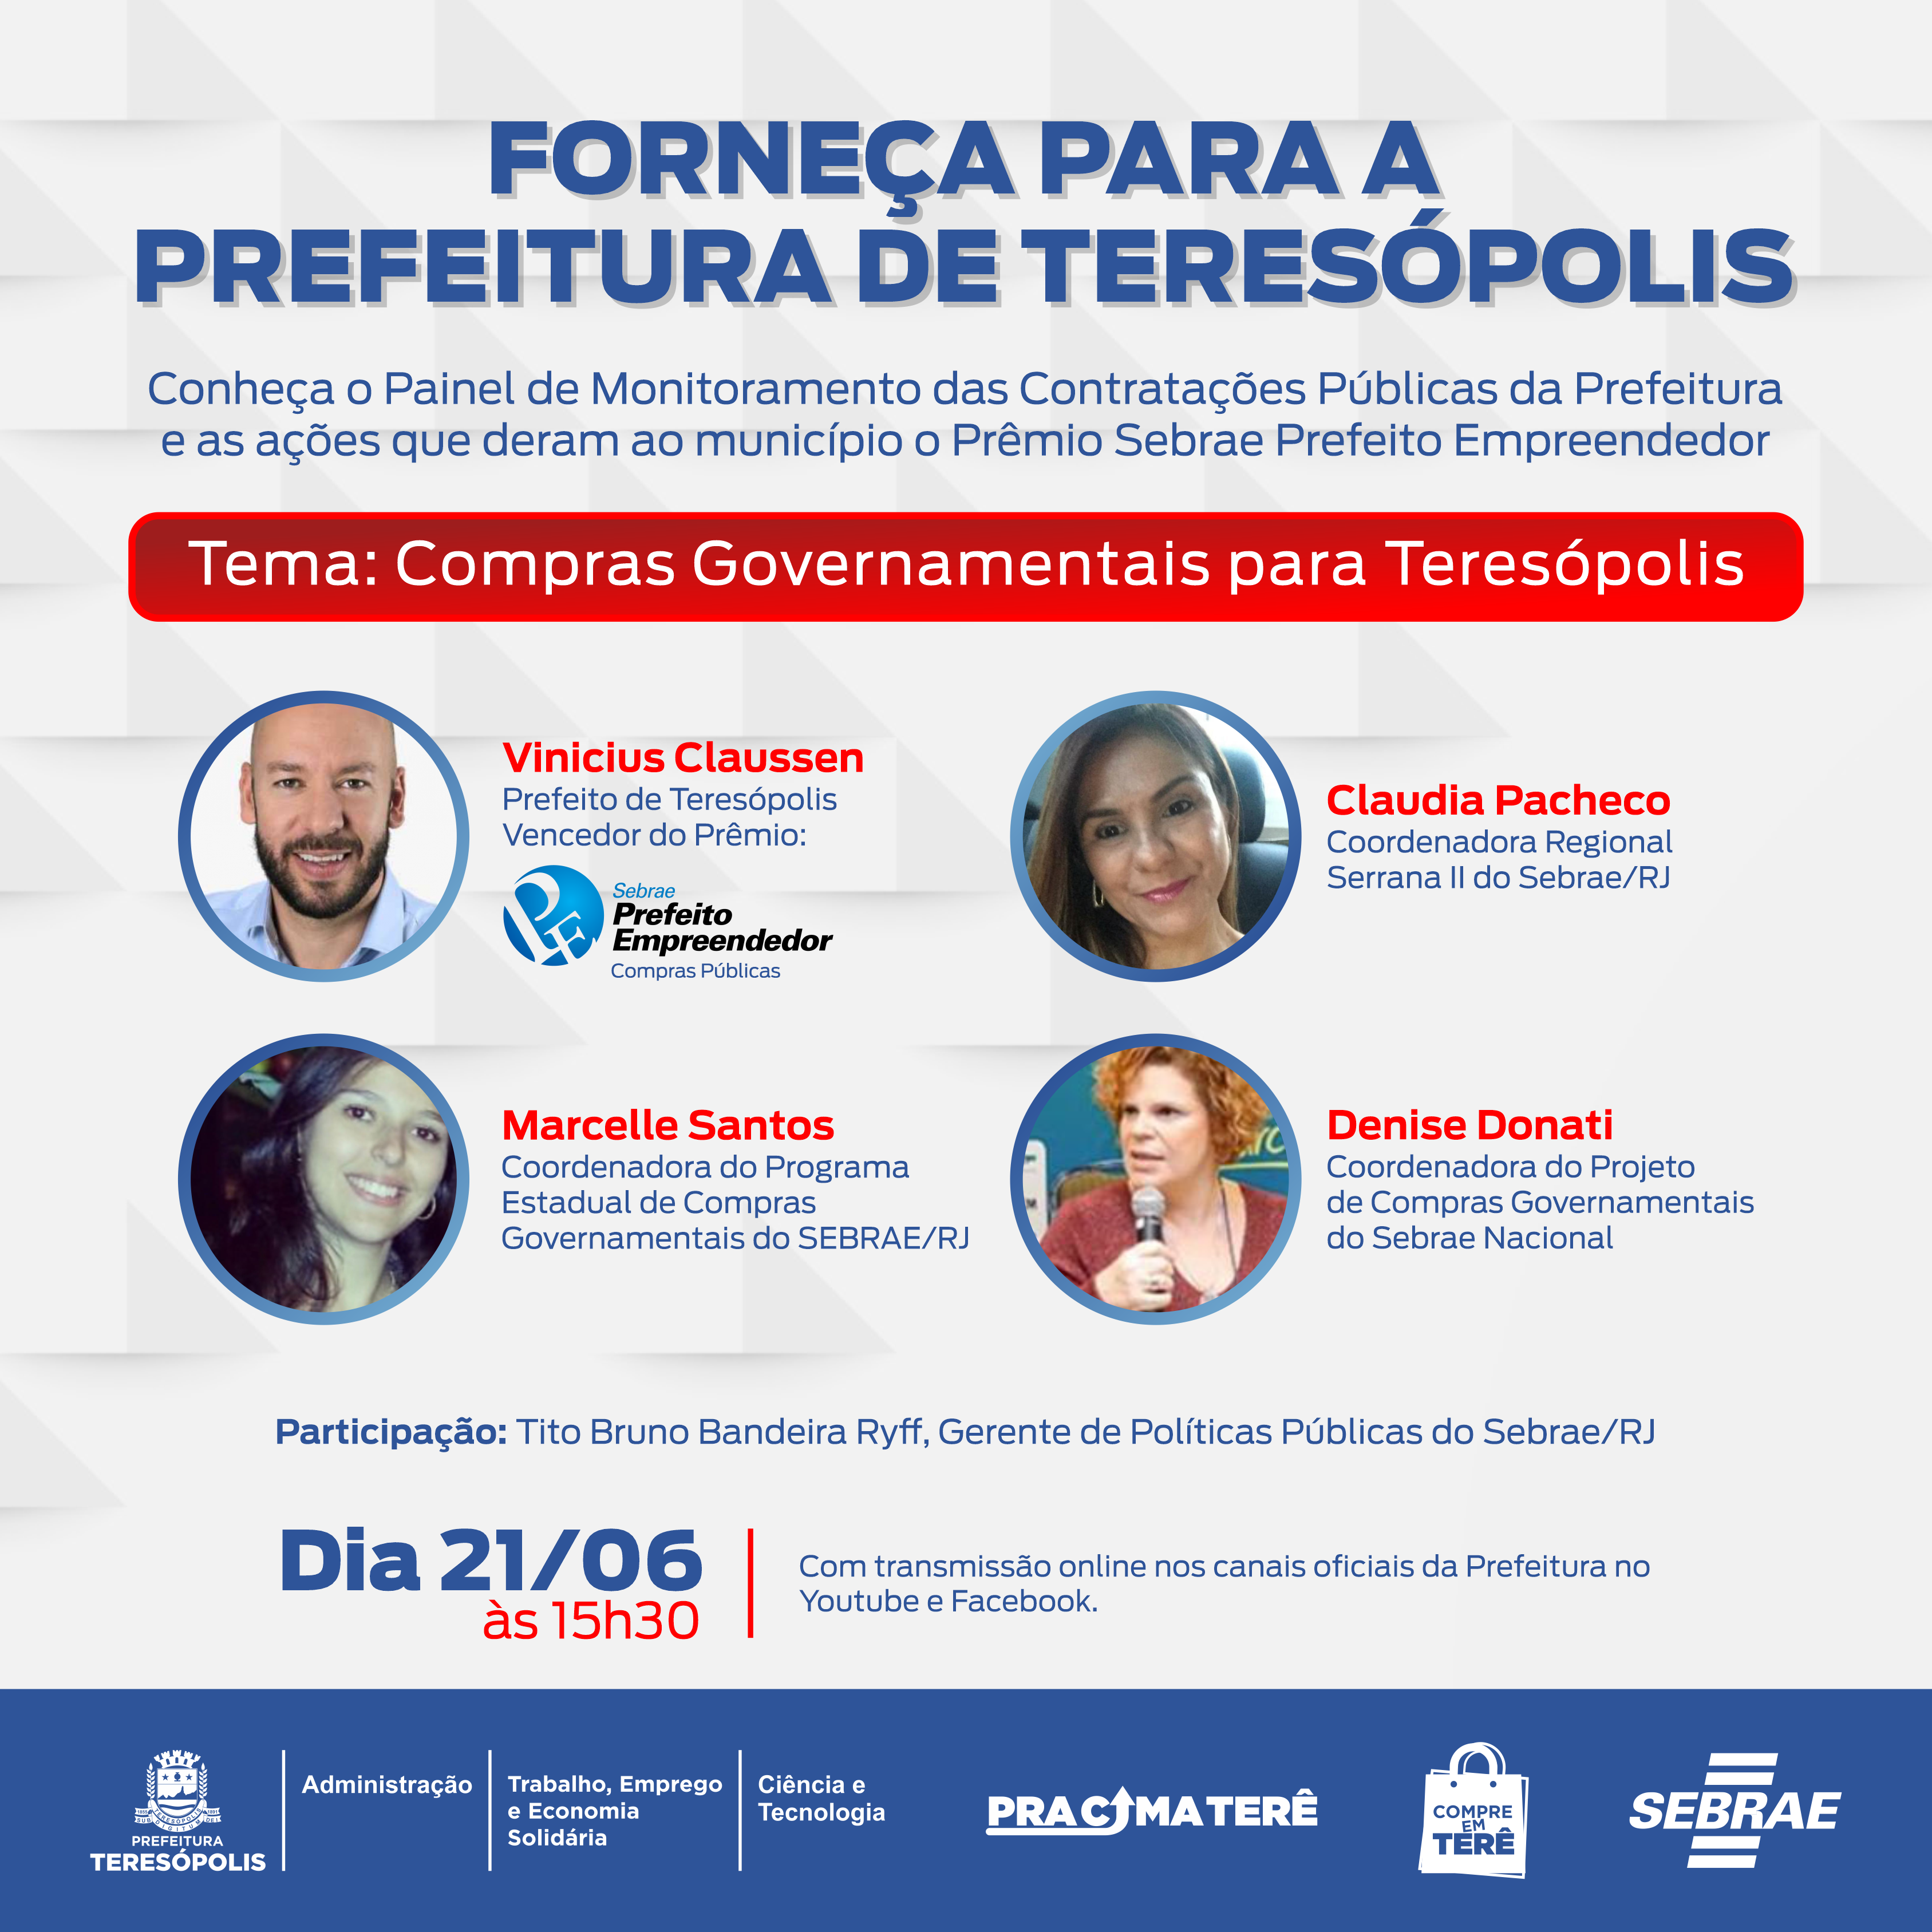 Prefeitura de Teresópolis lança painel para dar mais transparência às contratações públicas